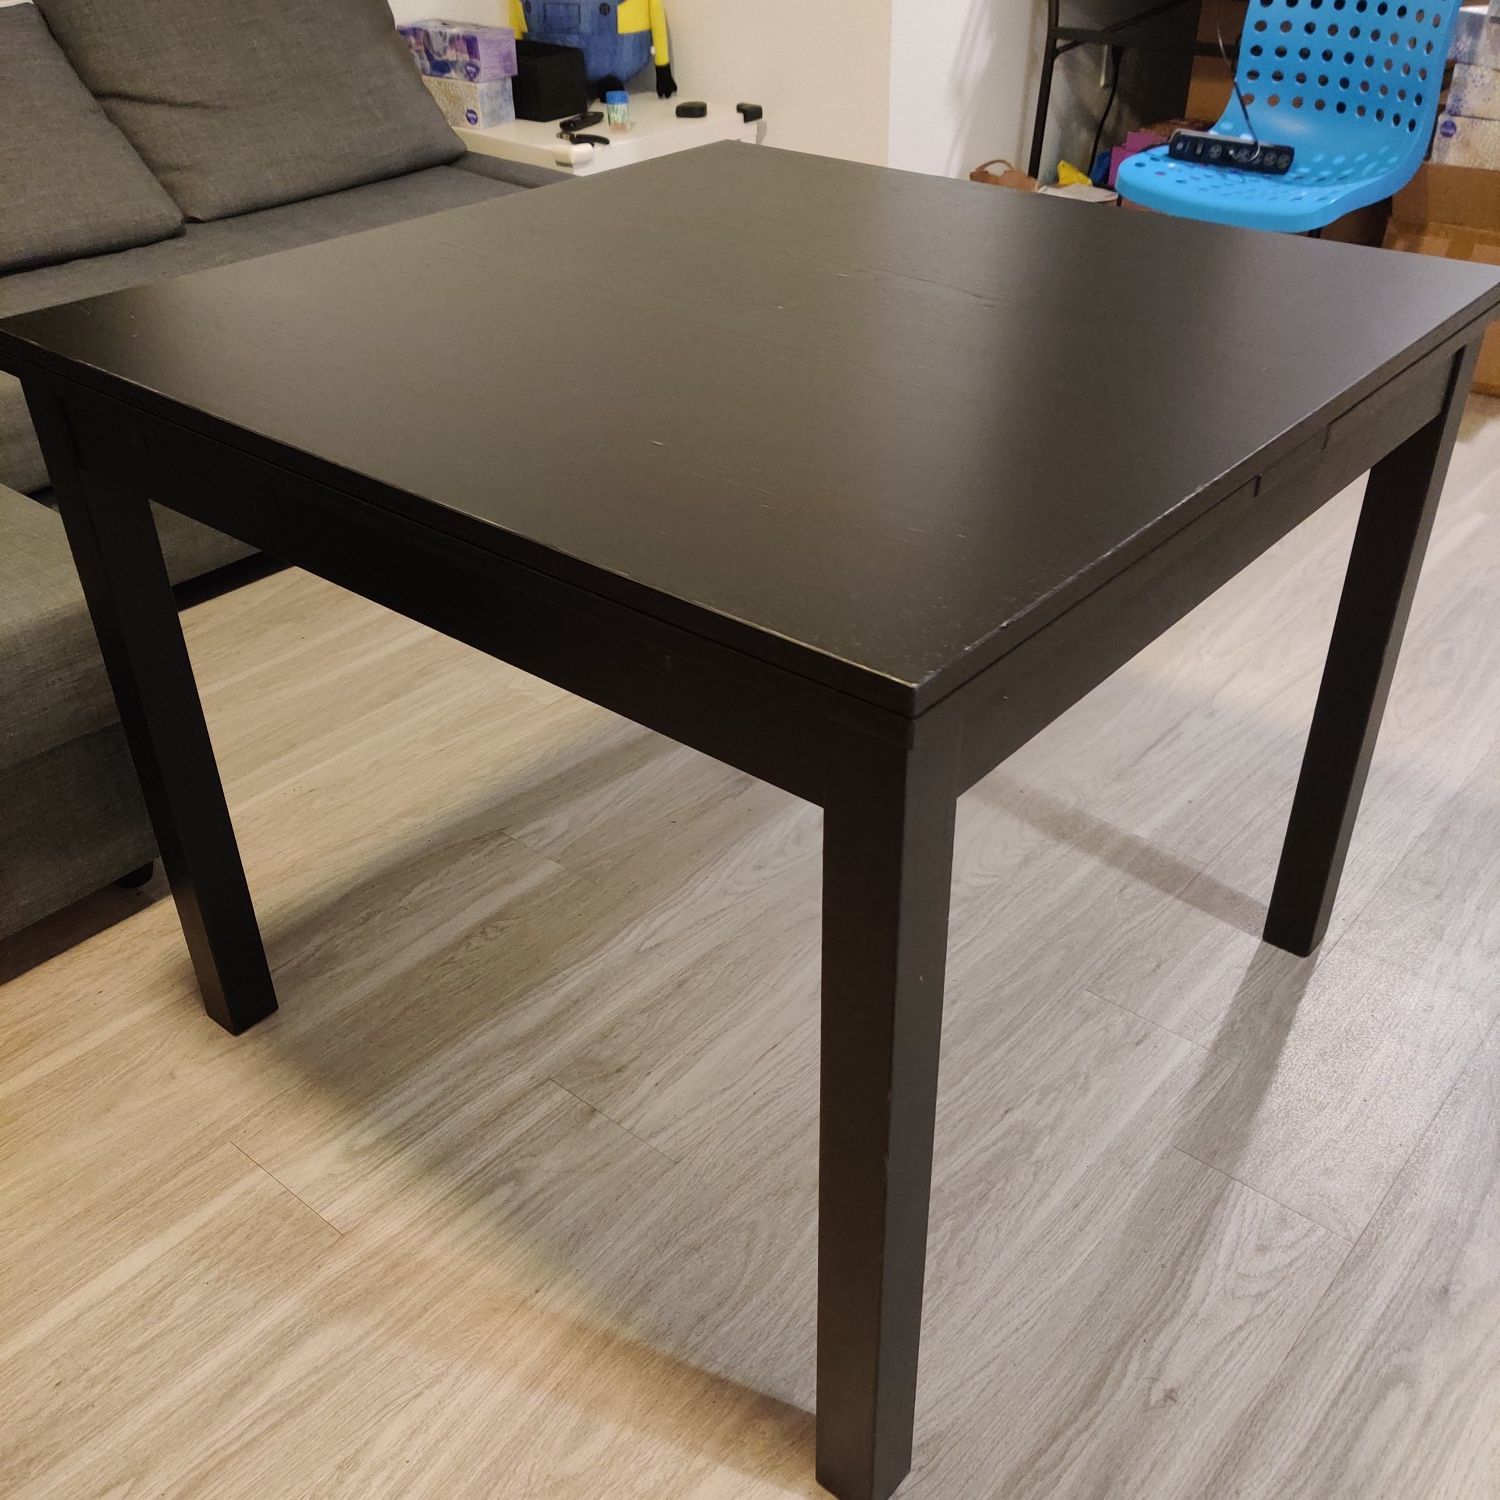 IKEA Bjursta adjustable kitchen table model #21198.